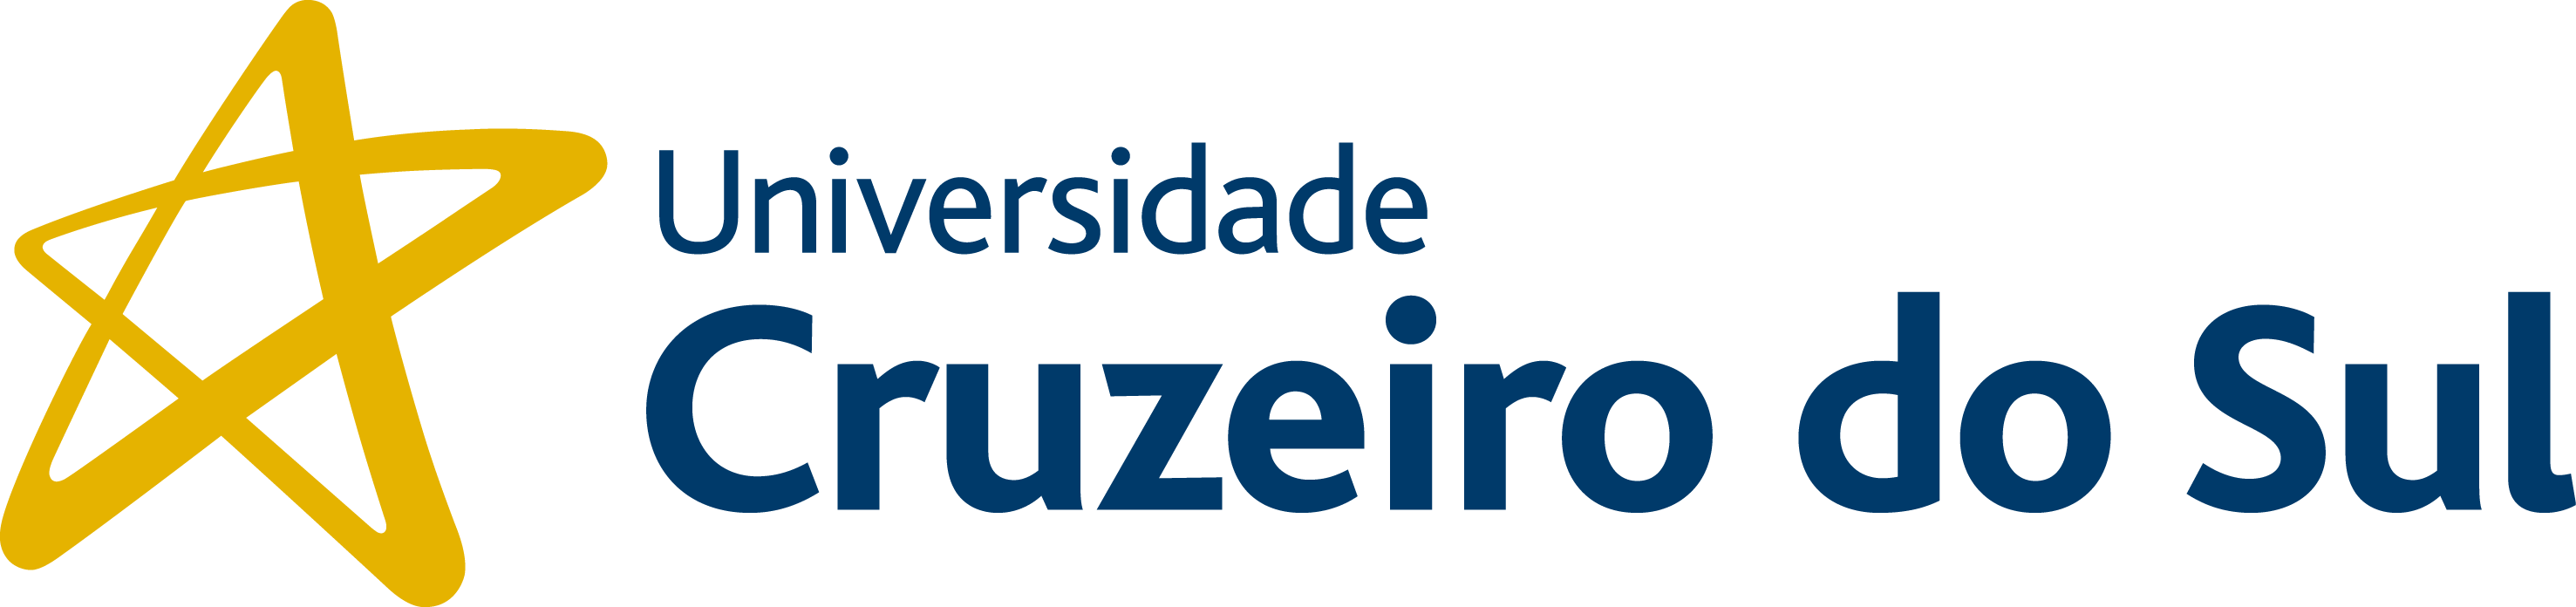 Universidade Cruzeiro do Sul - Campus Anália Franco